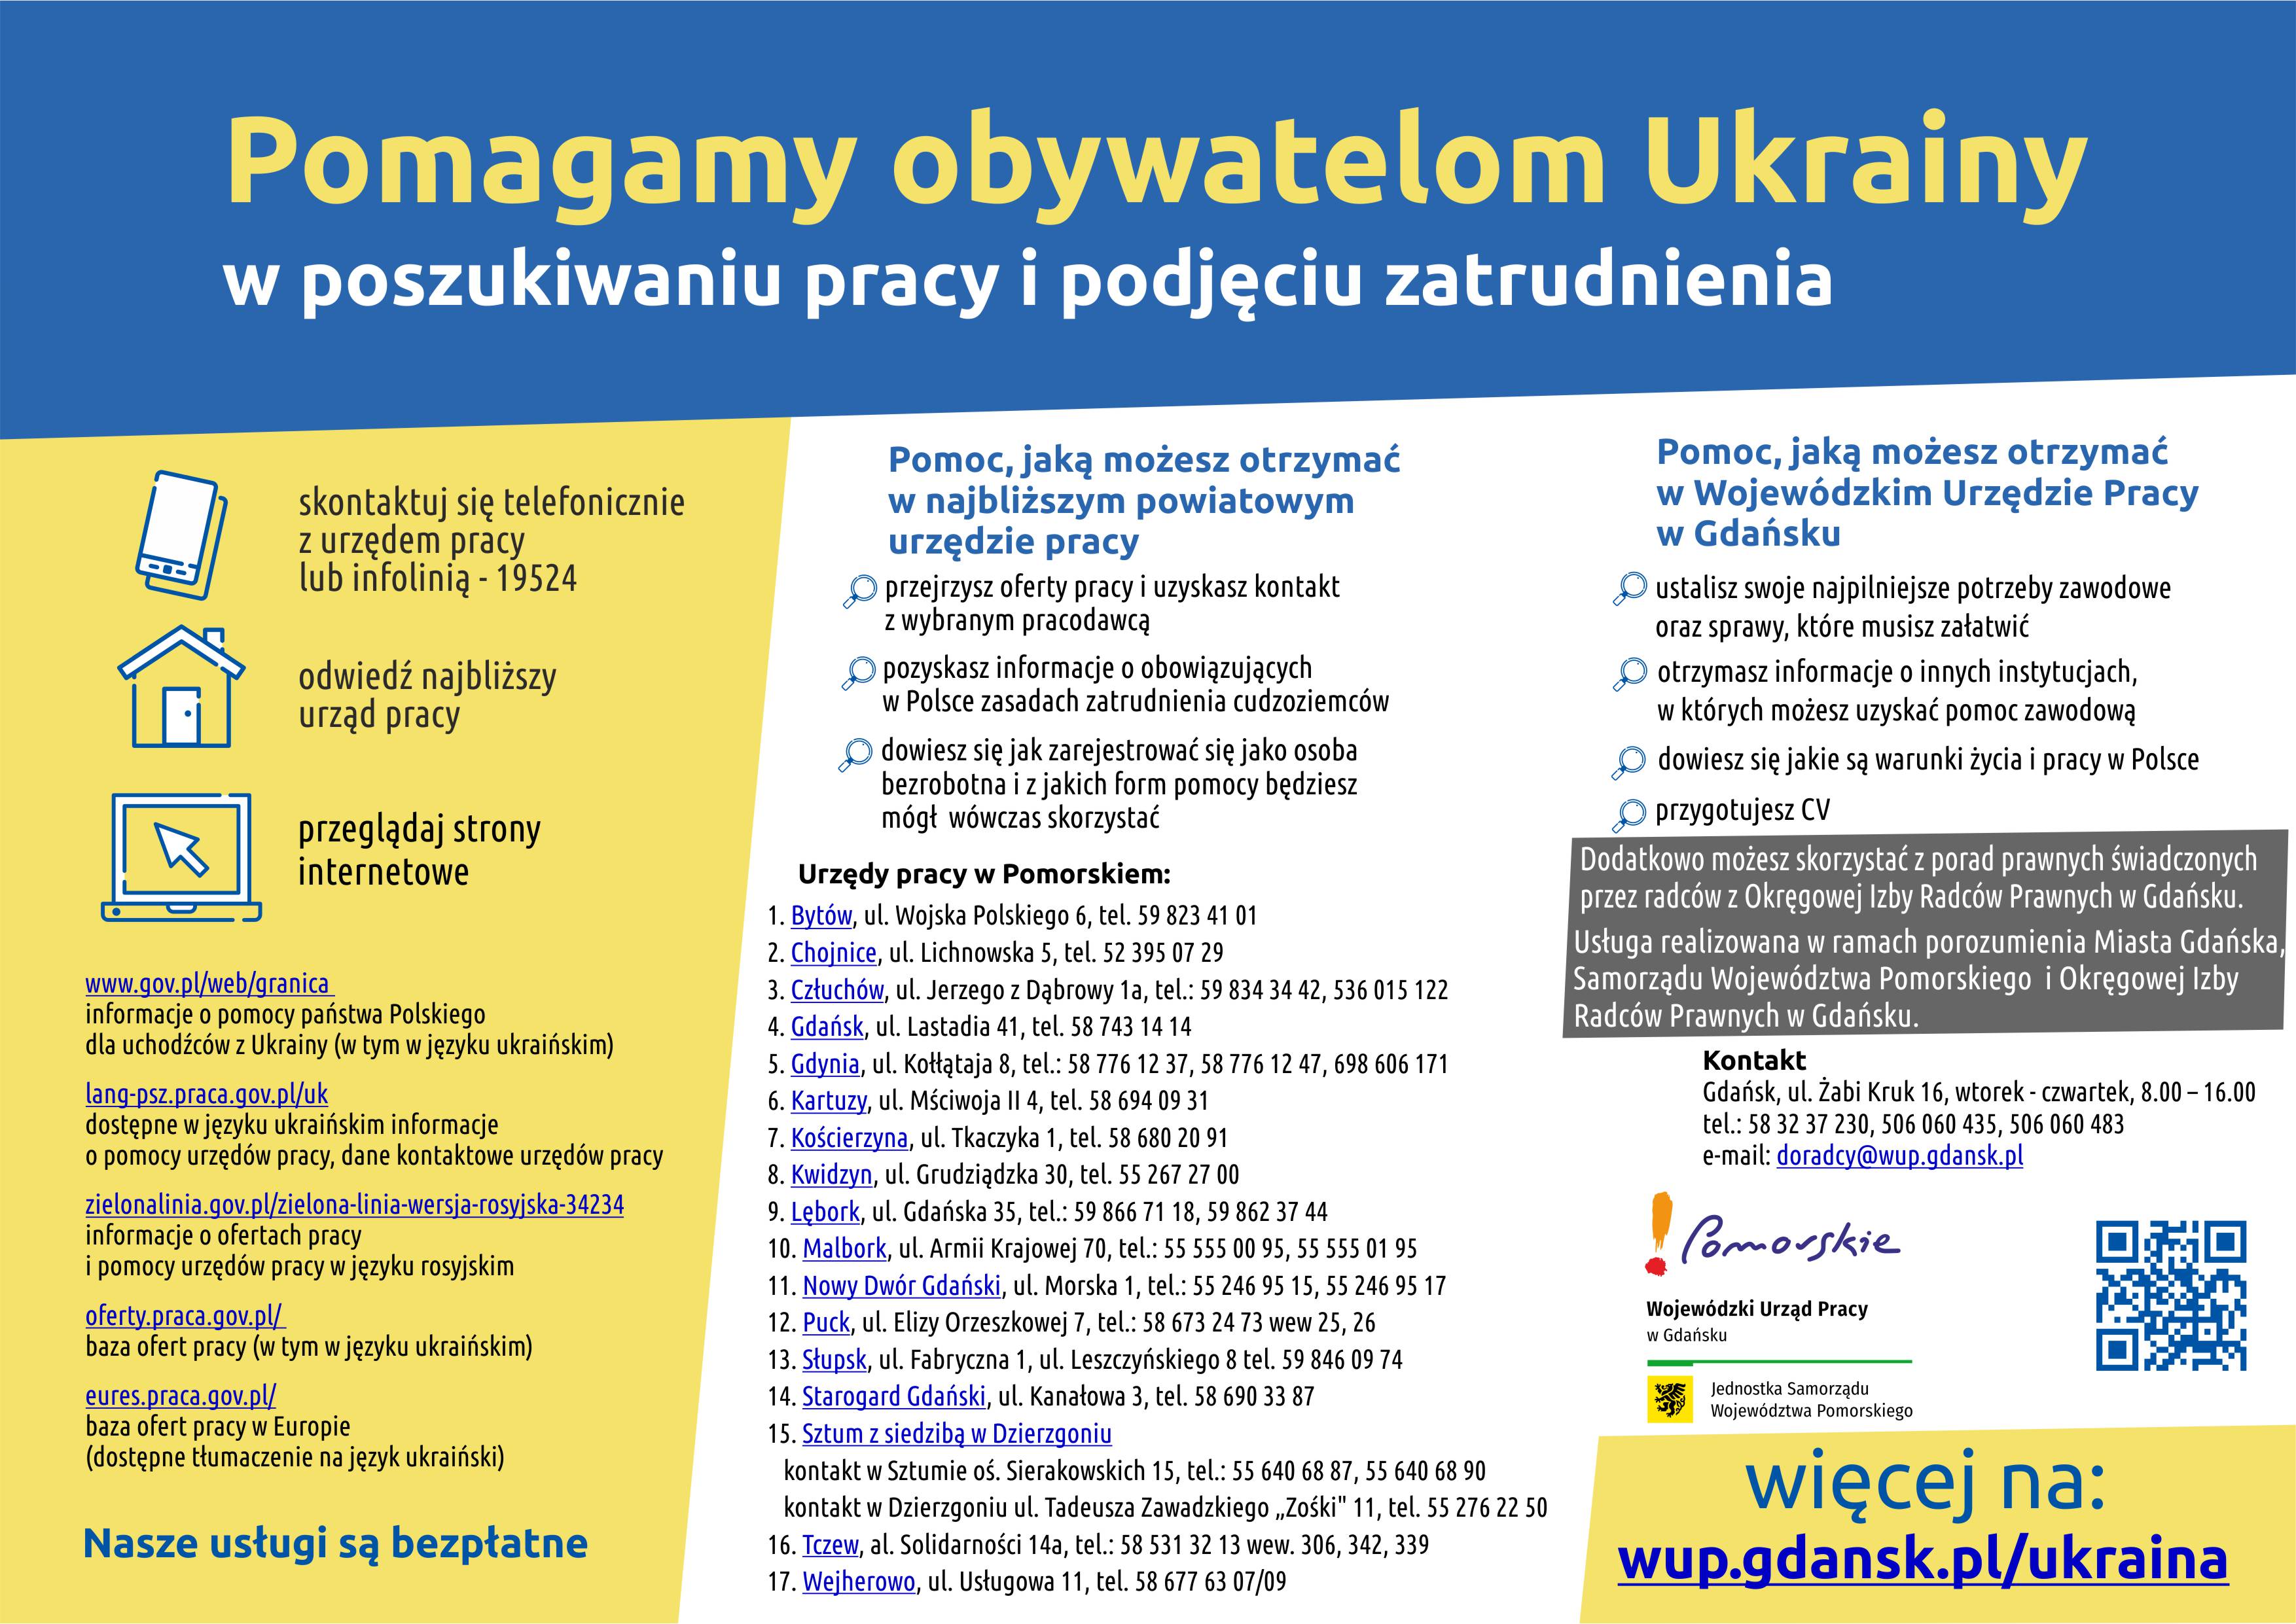 Ulotka Wojewódzkiego Urzędu Pracy w Gdańsku o pomocy obywatelom Ukrainy w poszukiwaniu pracy i zatrudnienia